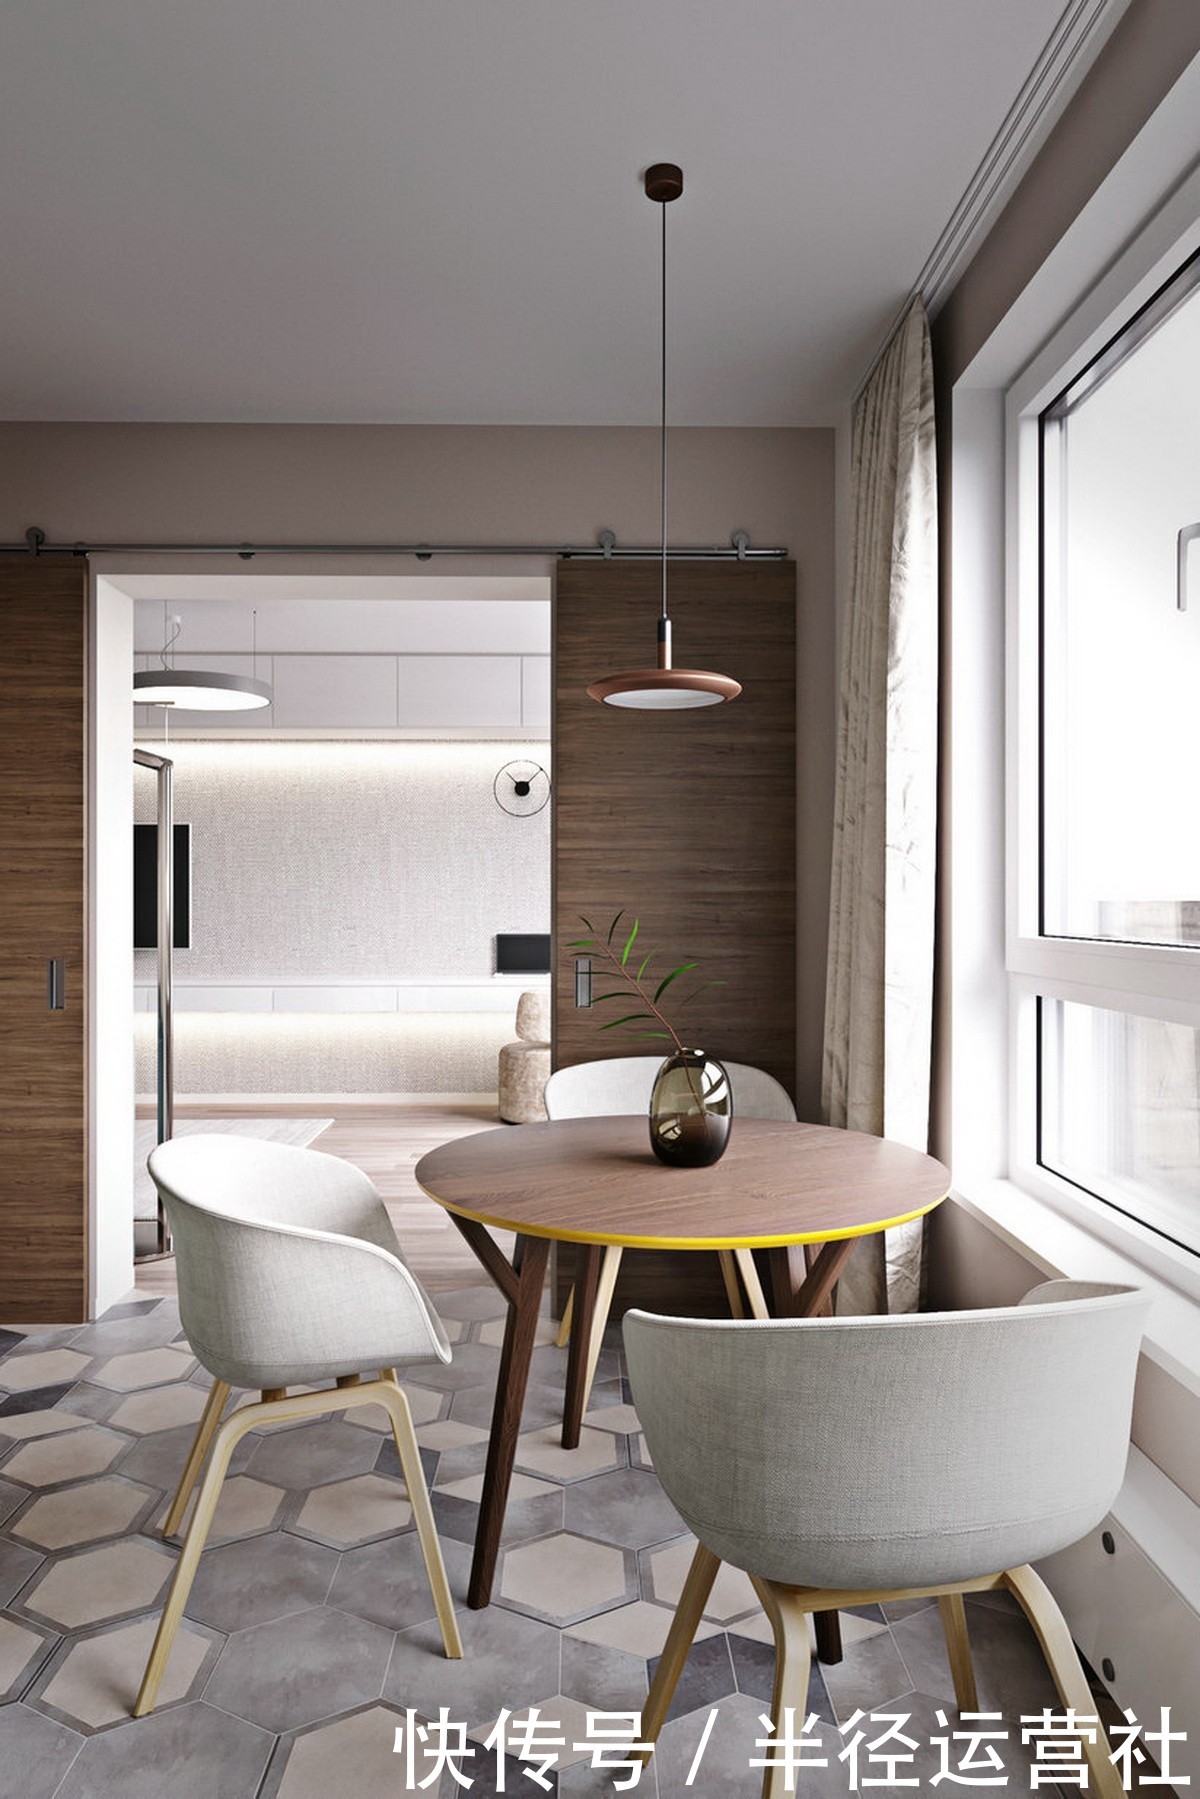 深圳现代公寓装修设计,60平方米跨越多个空间